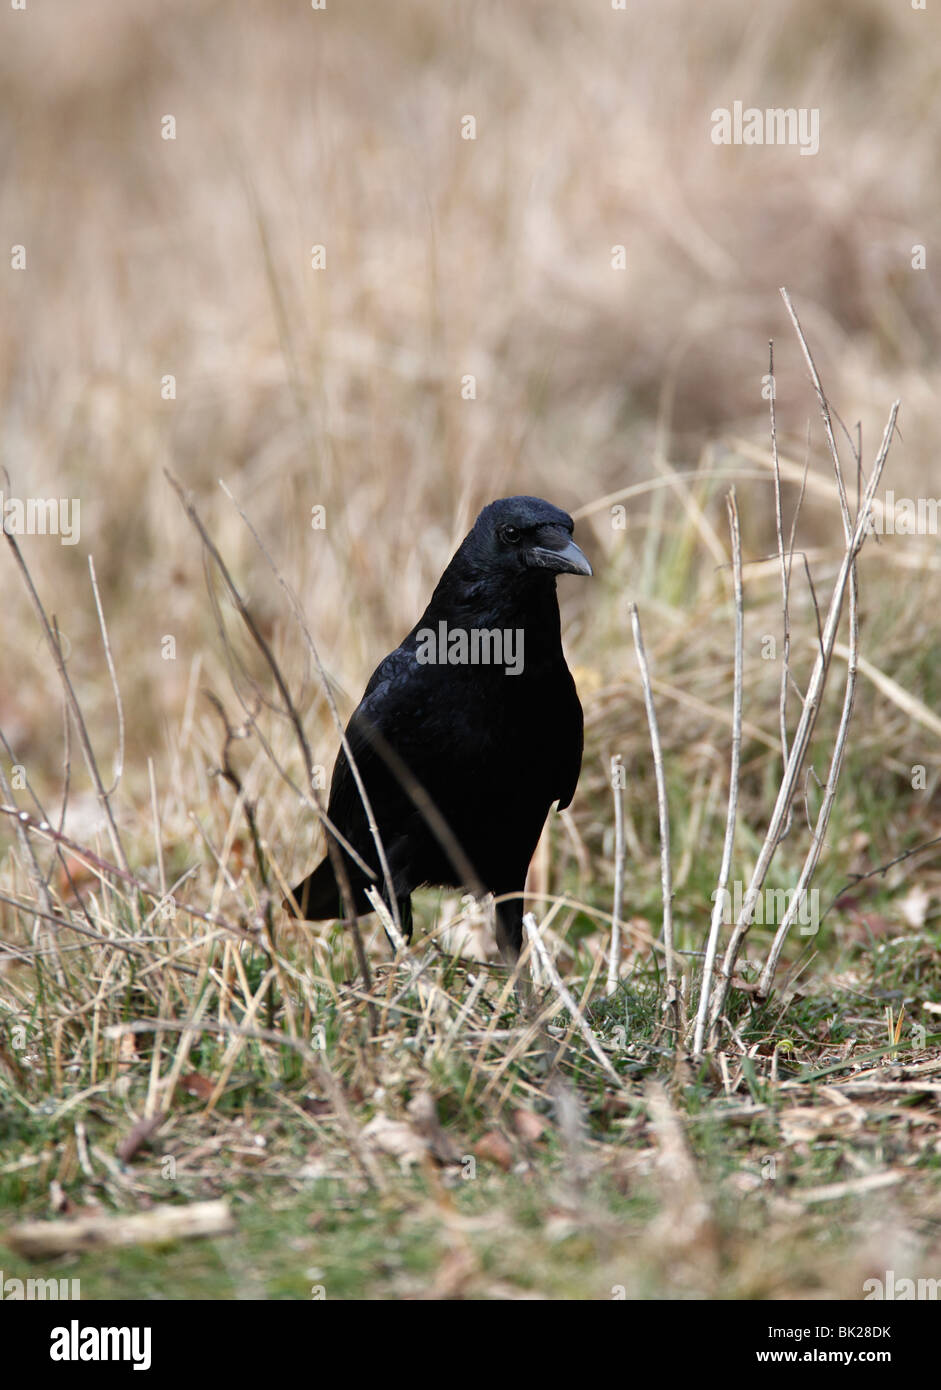 Carrion crow (Corvus corone) de pie en el césped largo vista frontal Foto de stock